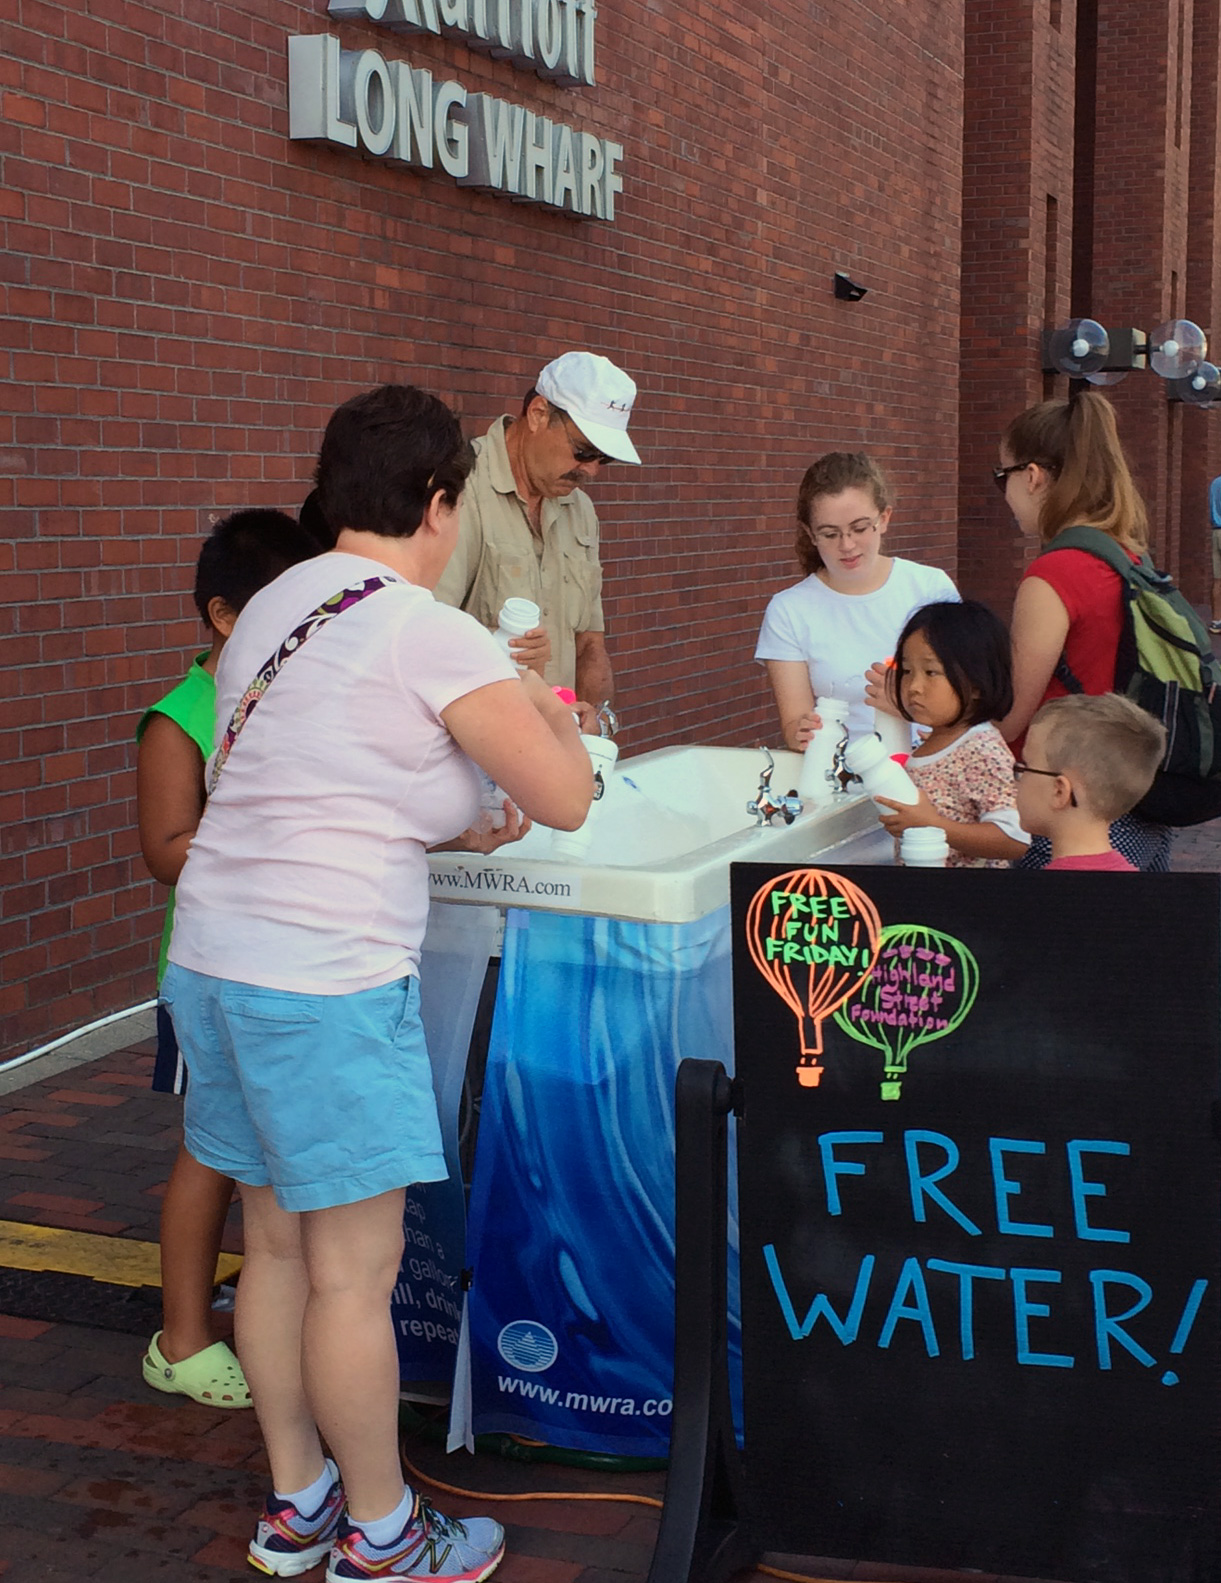 MWRA - Free Water Fountain at Free Fun Friday, Long Wharf